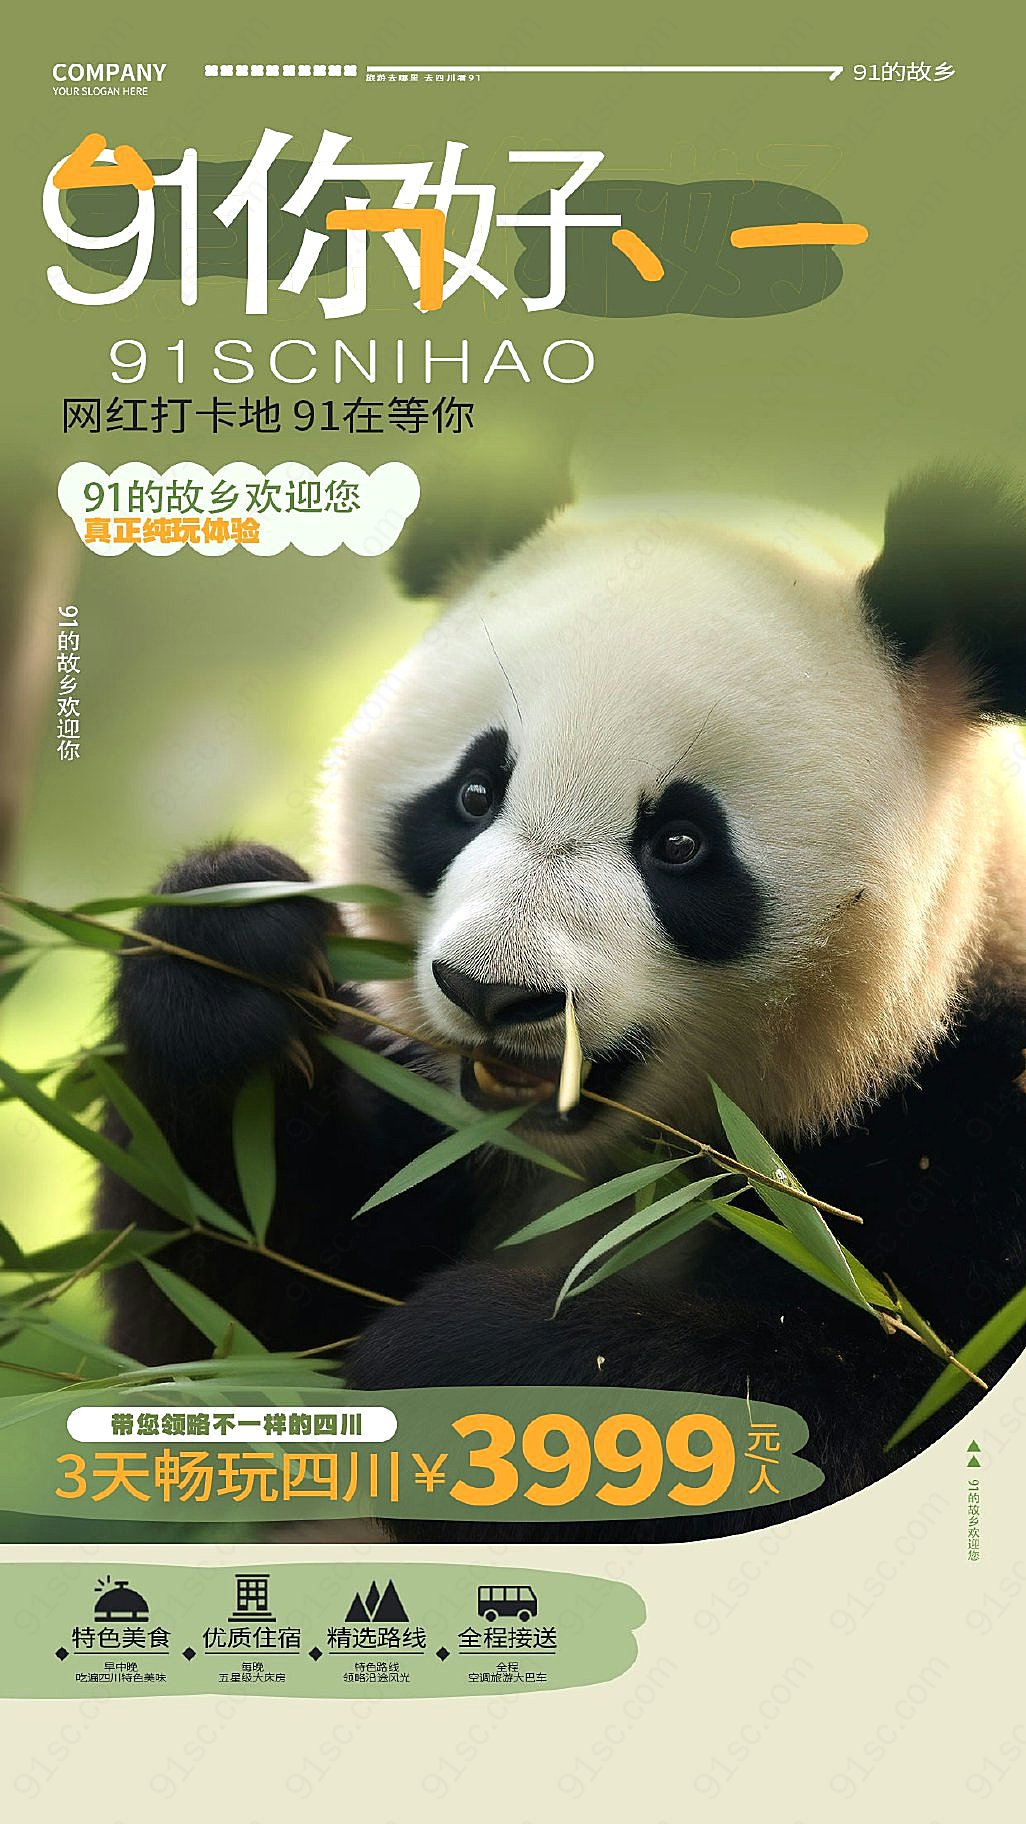 熊猫的家园四川旅游的邀请手机海报AI的魔力新媒体用图下载